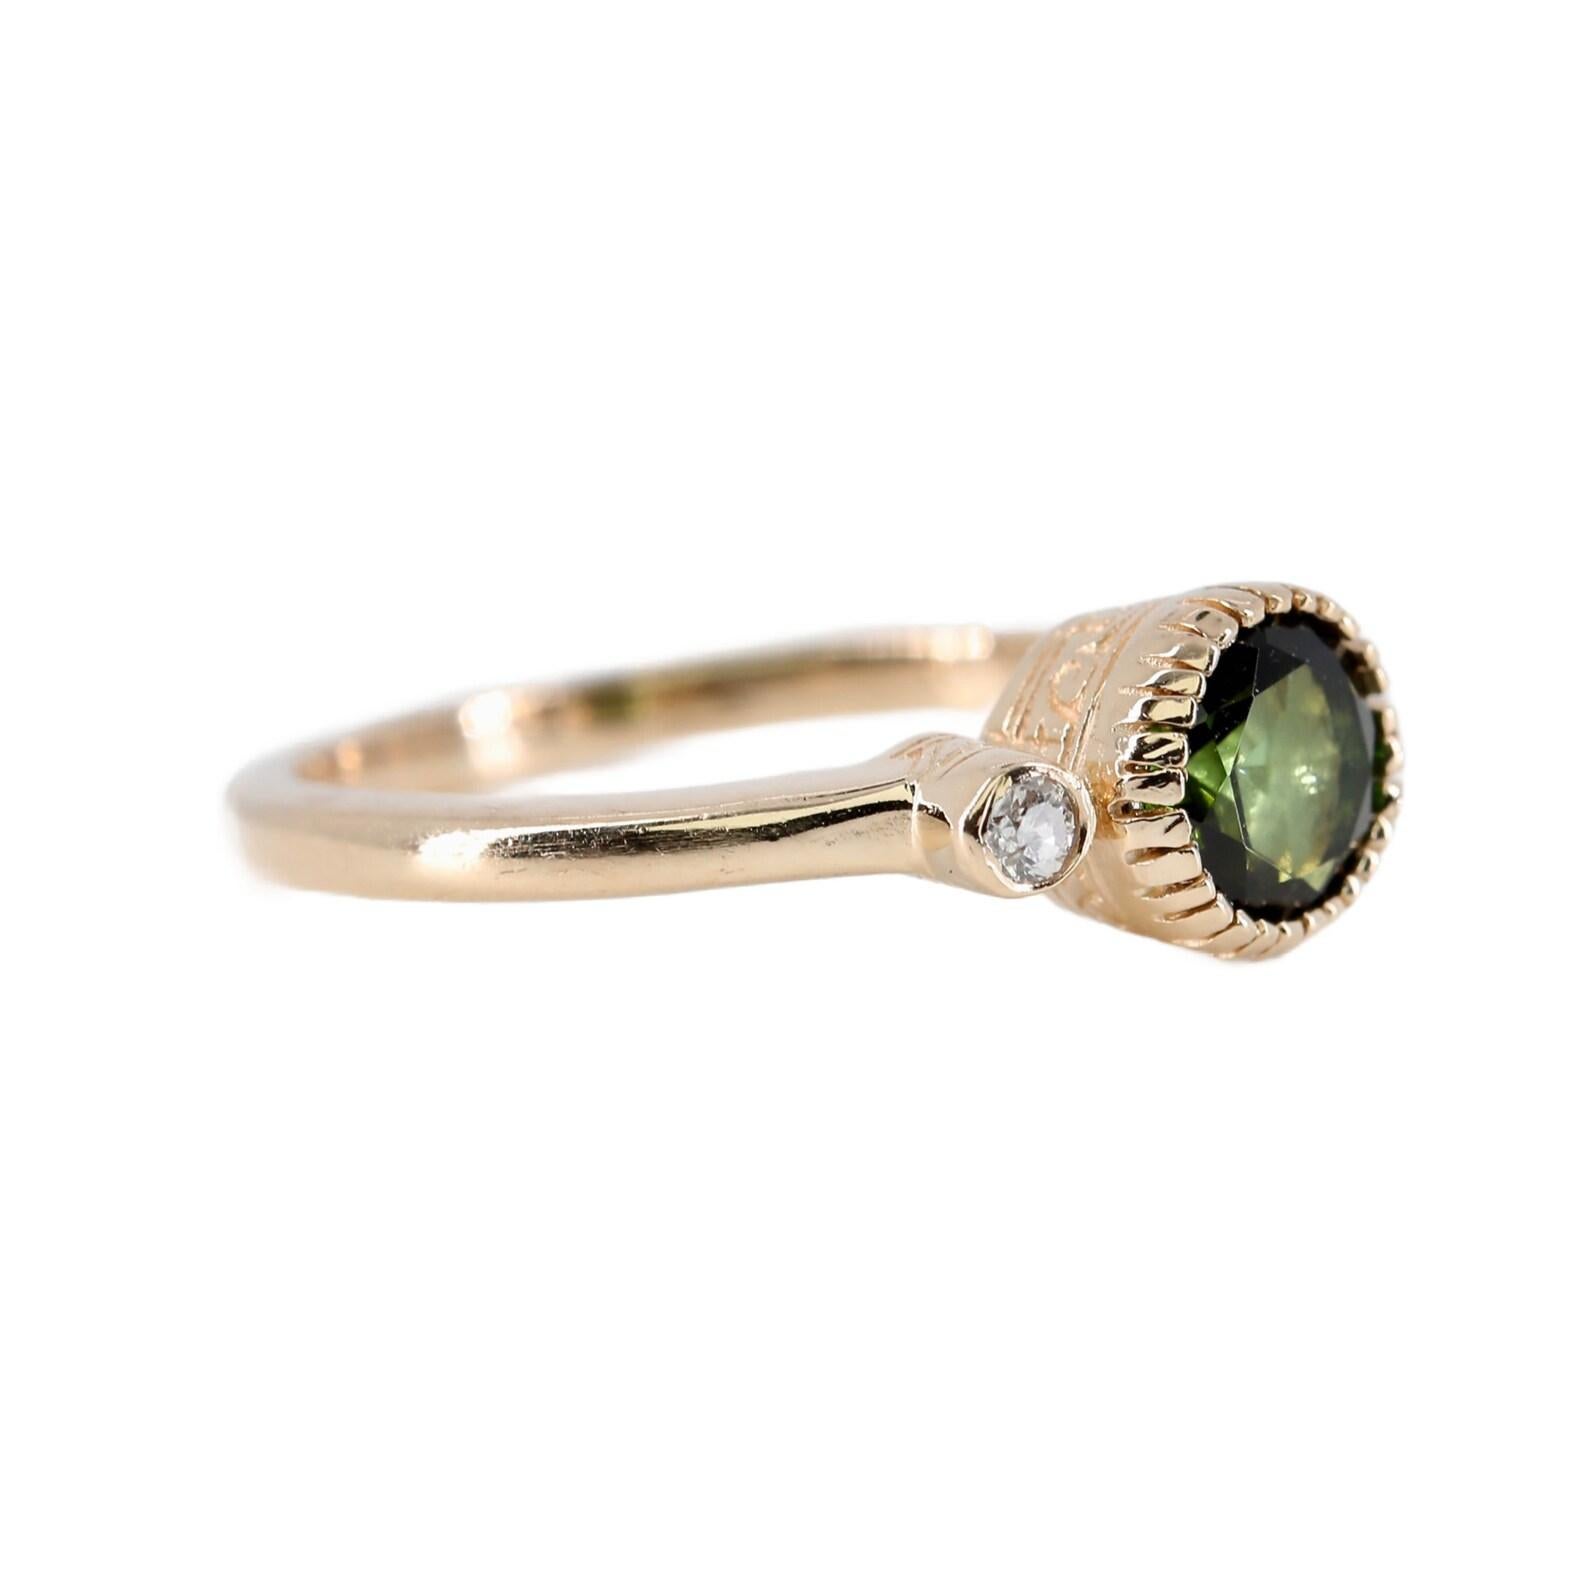 Ein Vintage-Ring mit drei Steinen, grünem Turmalin und Diamanten. Dieser aus 14 Karat Gelbgold gefertigte Ring wird von einem 1,00 Karat schweren grünen Turmalin geziert. Der Turmalin wird von zwei Diamanten von 0,08 Karat eingerahmt. Abgerundet